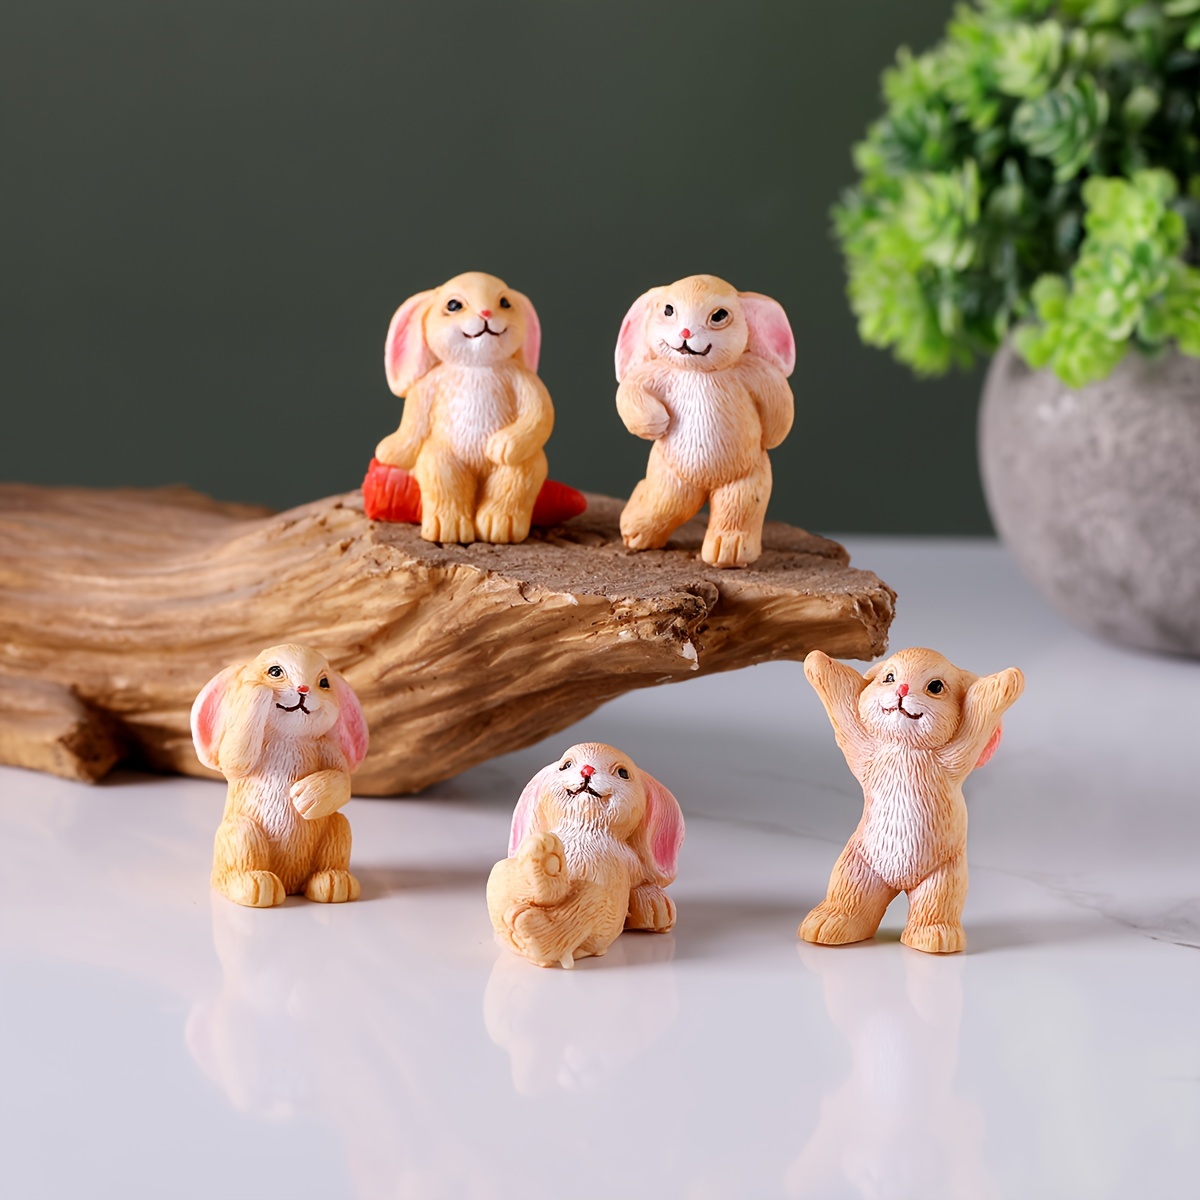 Ensemble de 48 ANIMAUX MINIATURES EN PLASTIQUE Terrarium maison de poupée  animaux de la ferme bébés figurines figurine fée jardin diorama artisanat  Mini Small Minis -  France